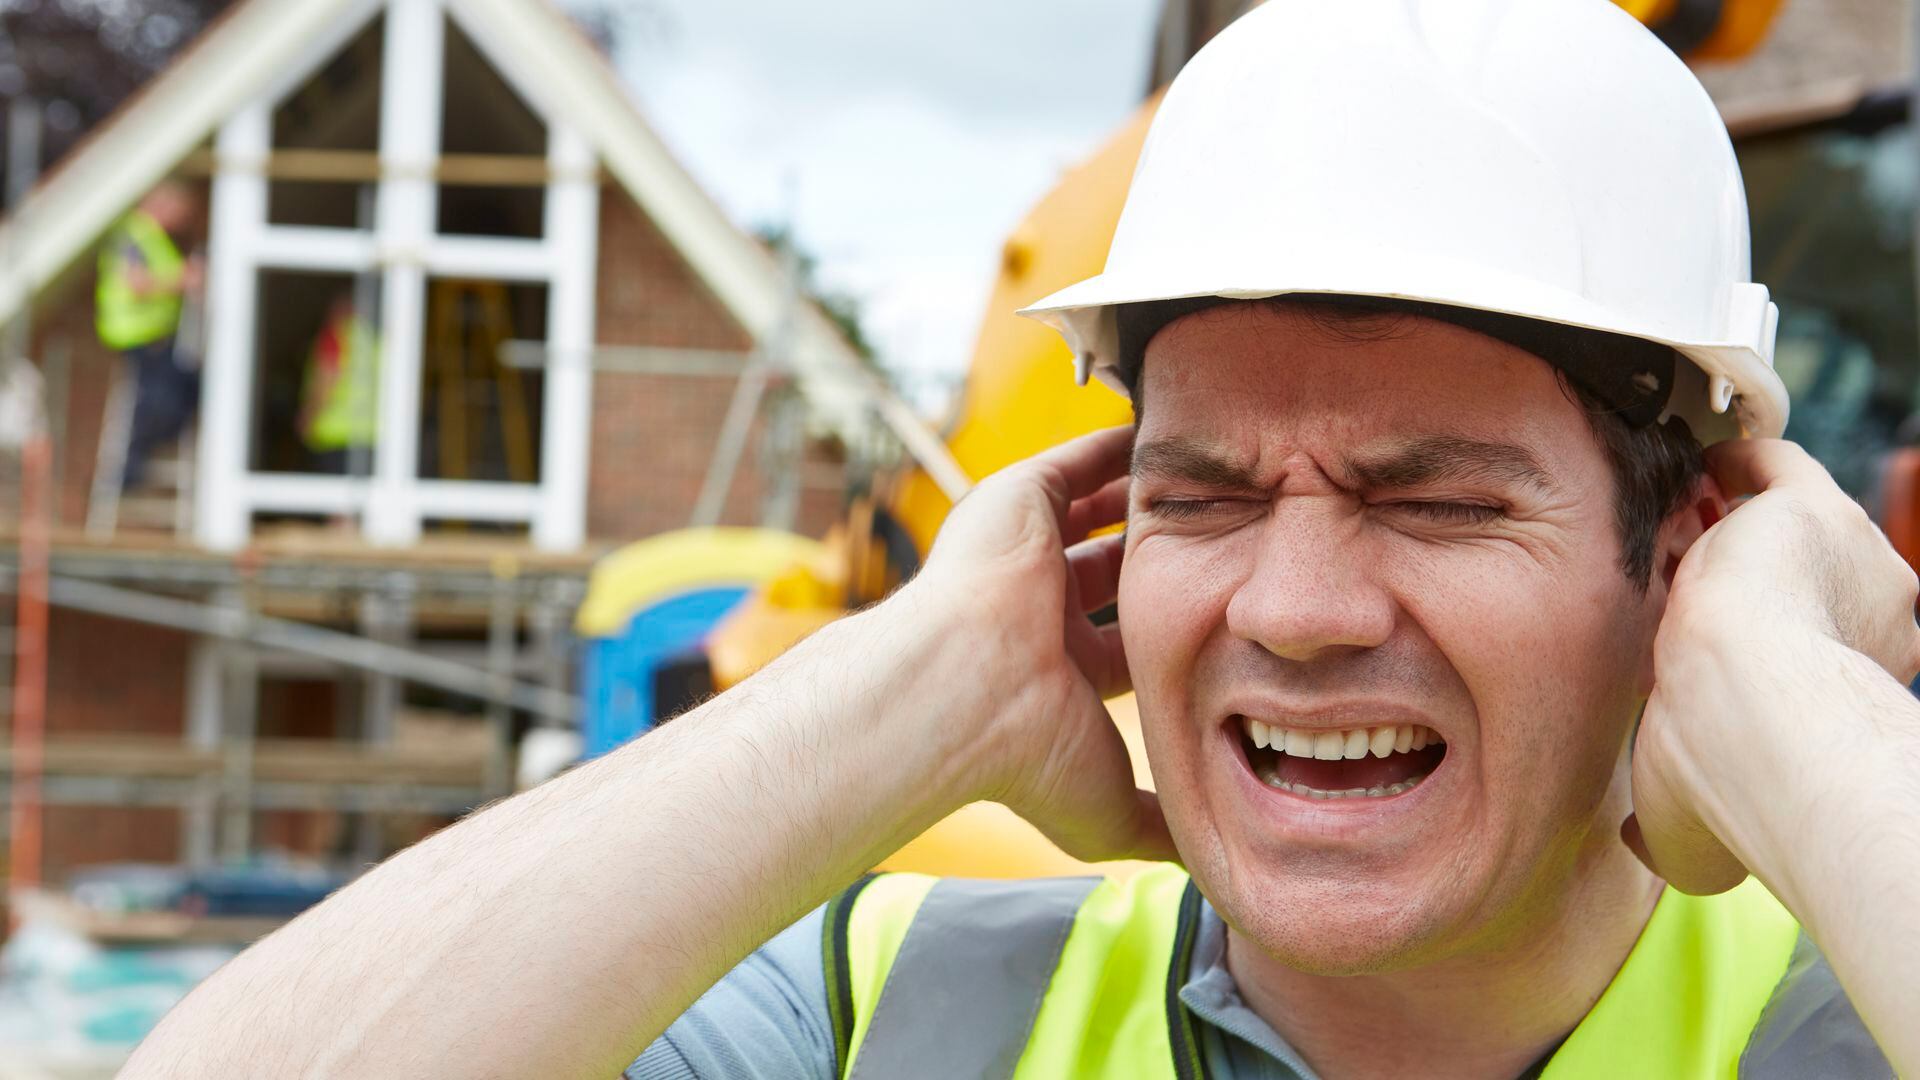 La contaminación por el ruido hace sufrir de cefaleas, dilatación de pupilas, agitación, tensión muscular e irritabilidad (Getty)